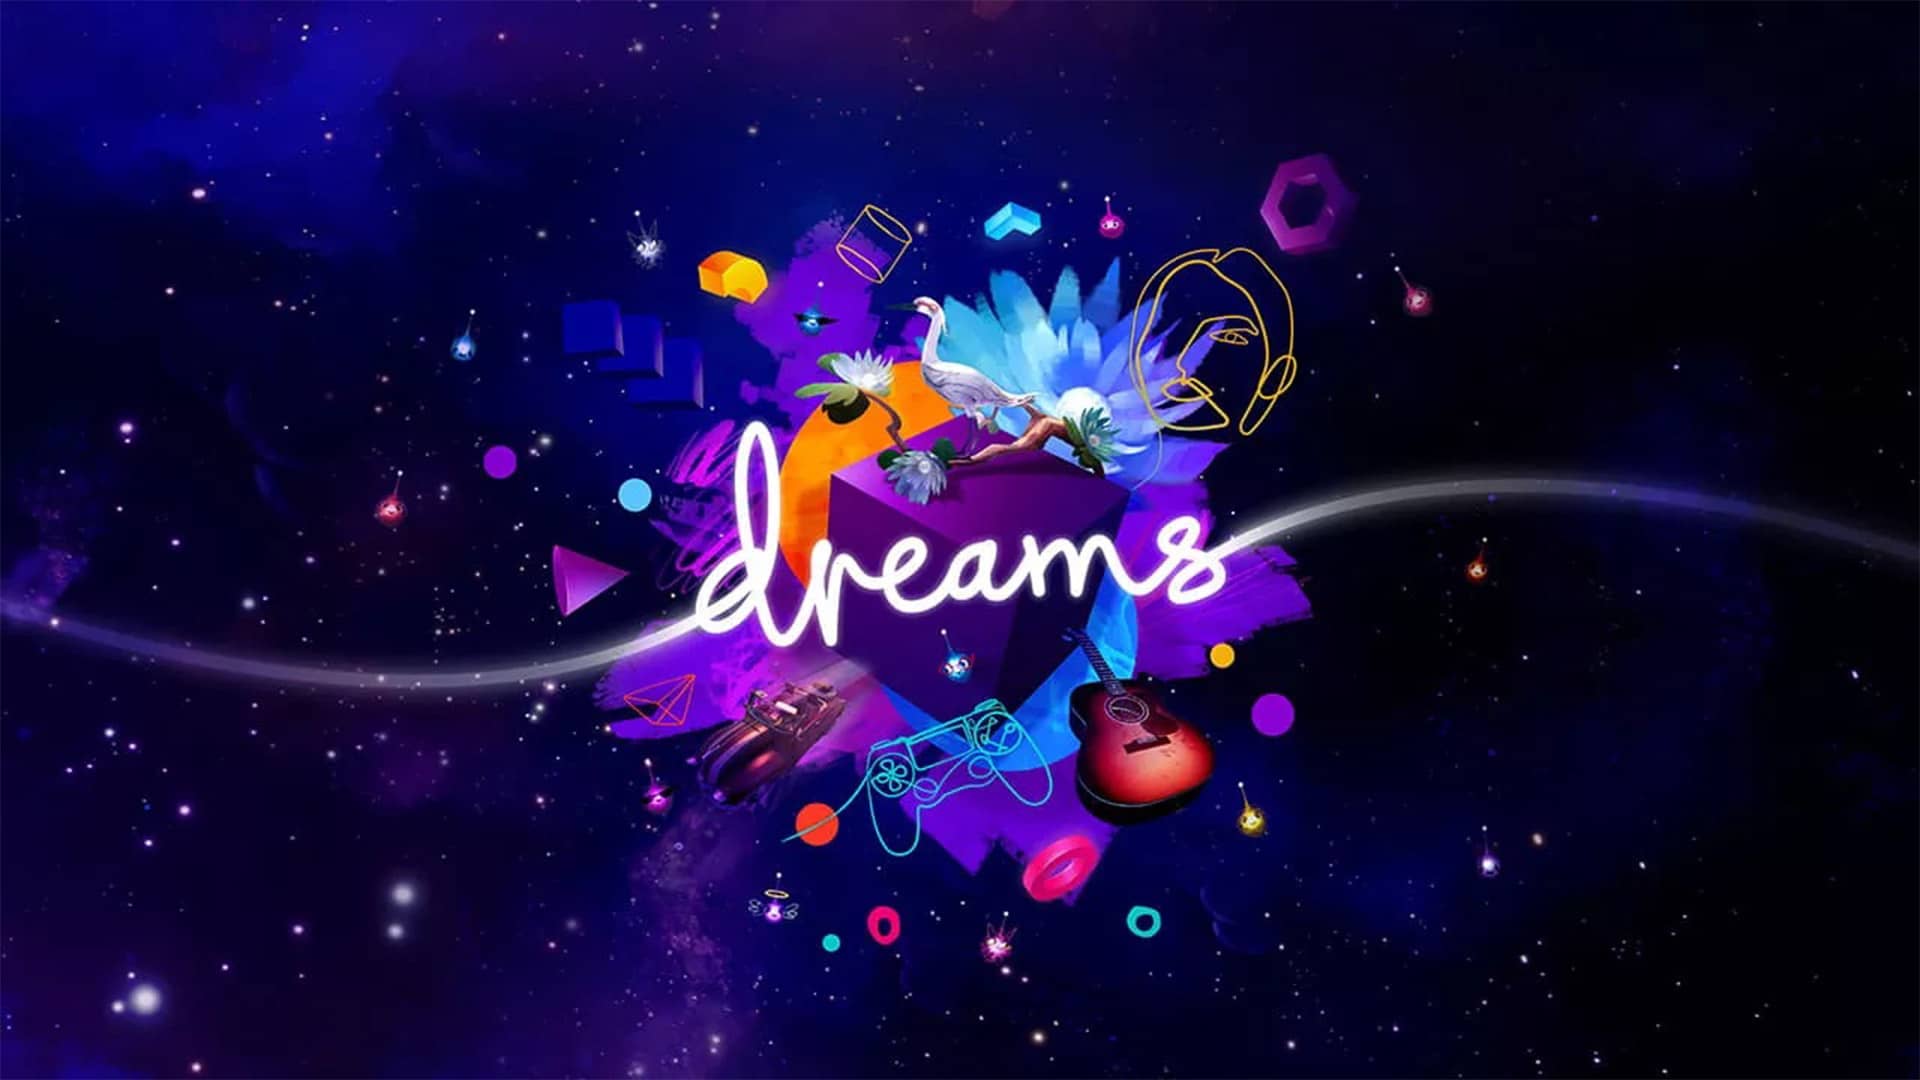 Bannière de la pochette du jeu vidéo Dreams